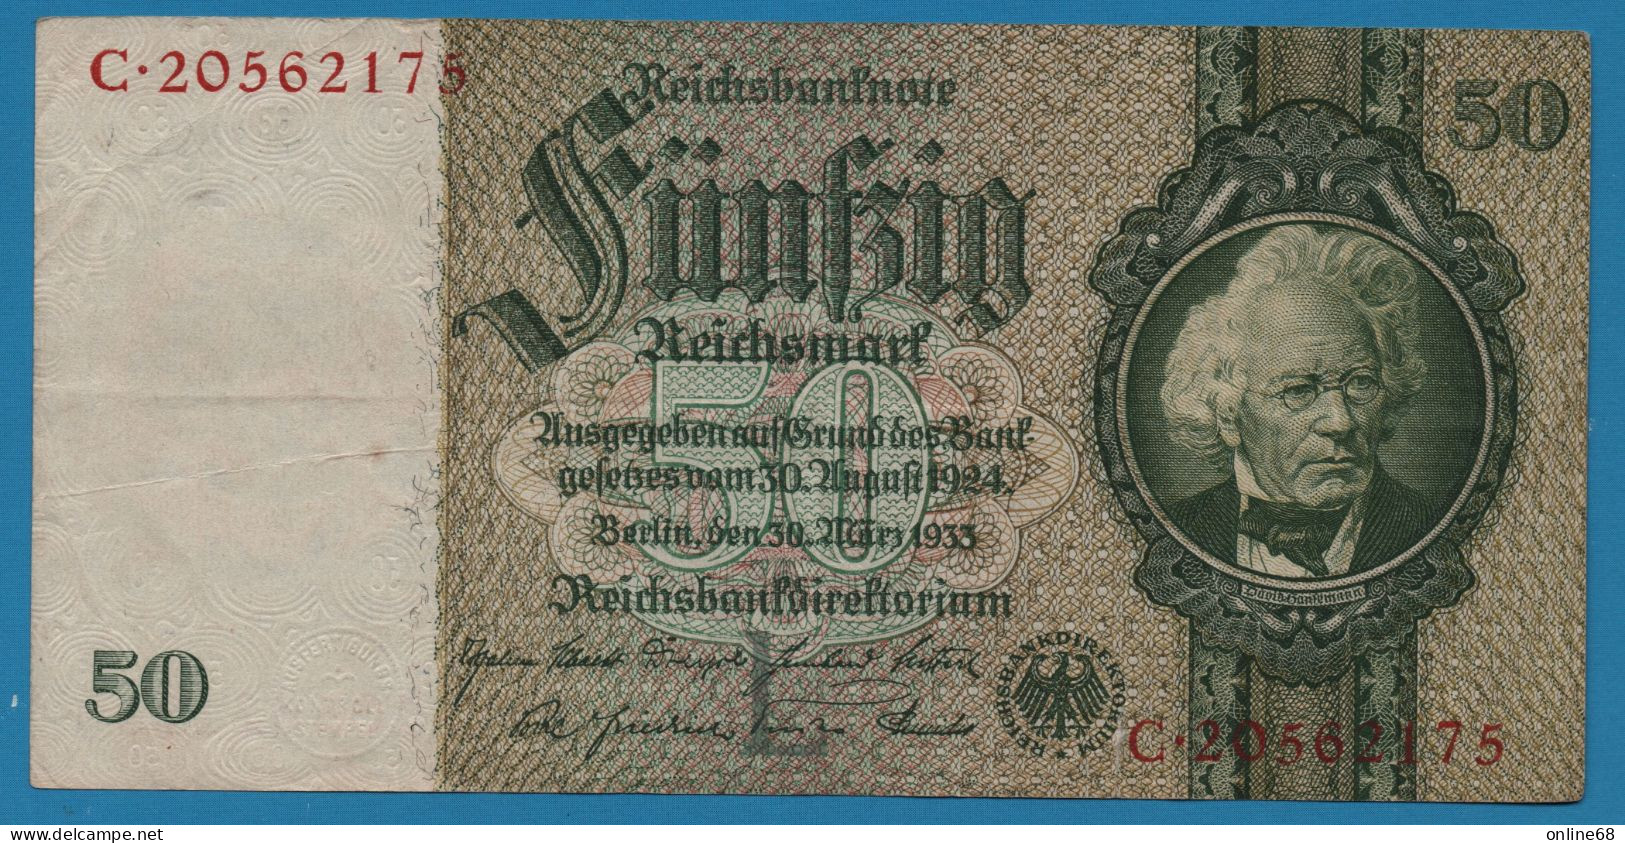 DEUTSCHES REICH 50 REICHSMARK 30.03.1933 LETTER L # C.20562175 P# 182a  David Hansemann - 50 Reichsmark